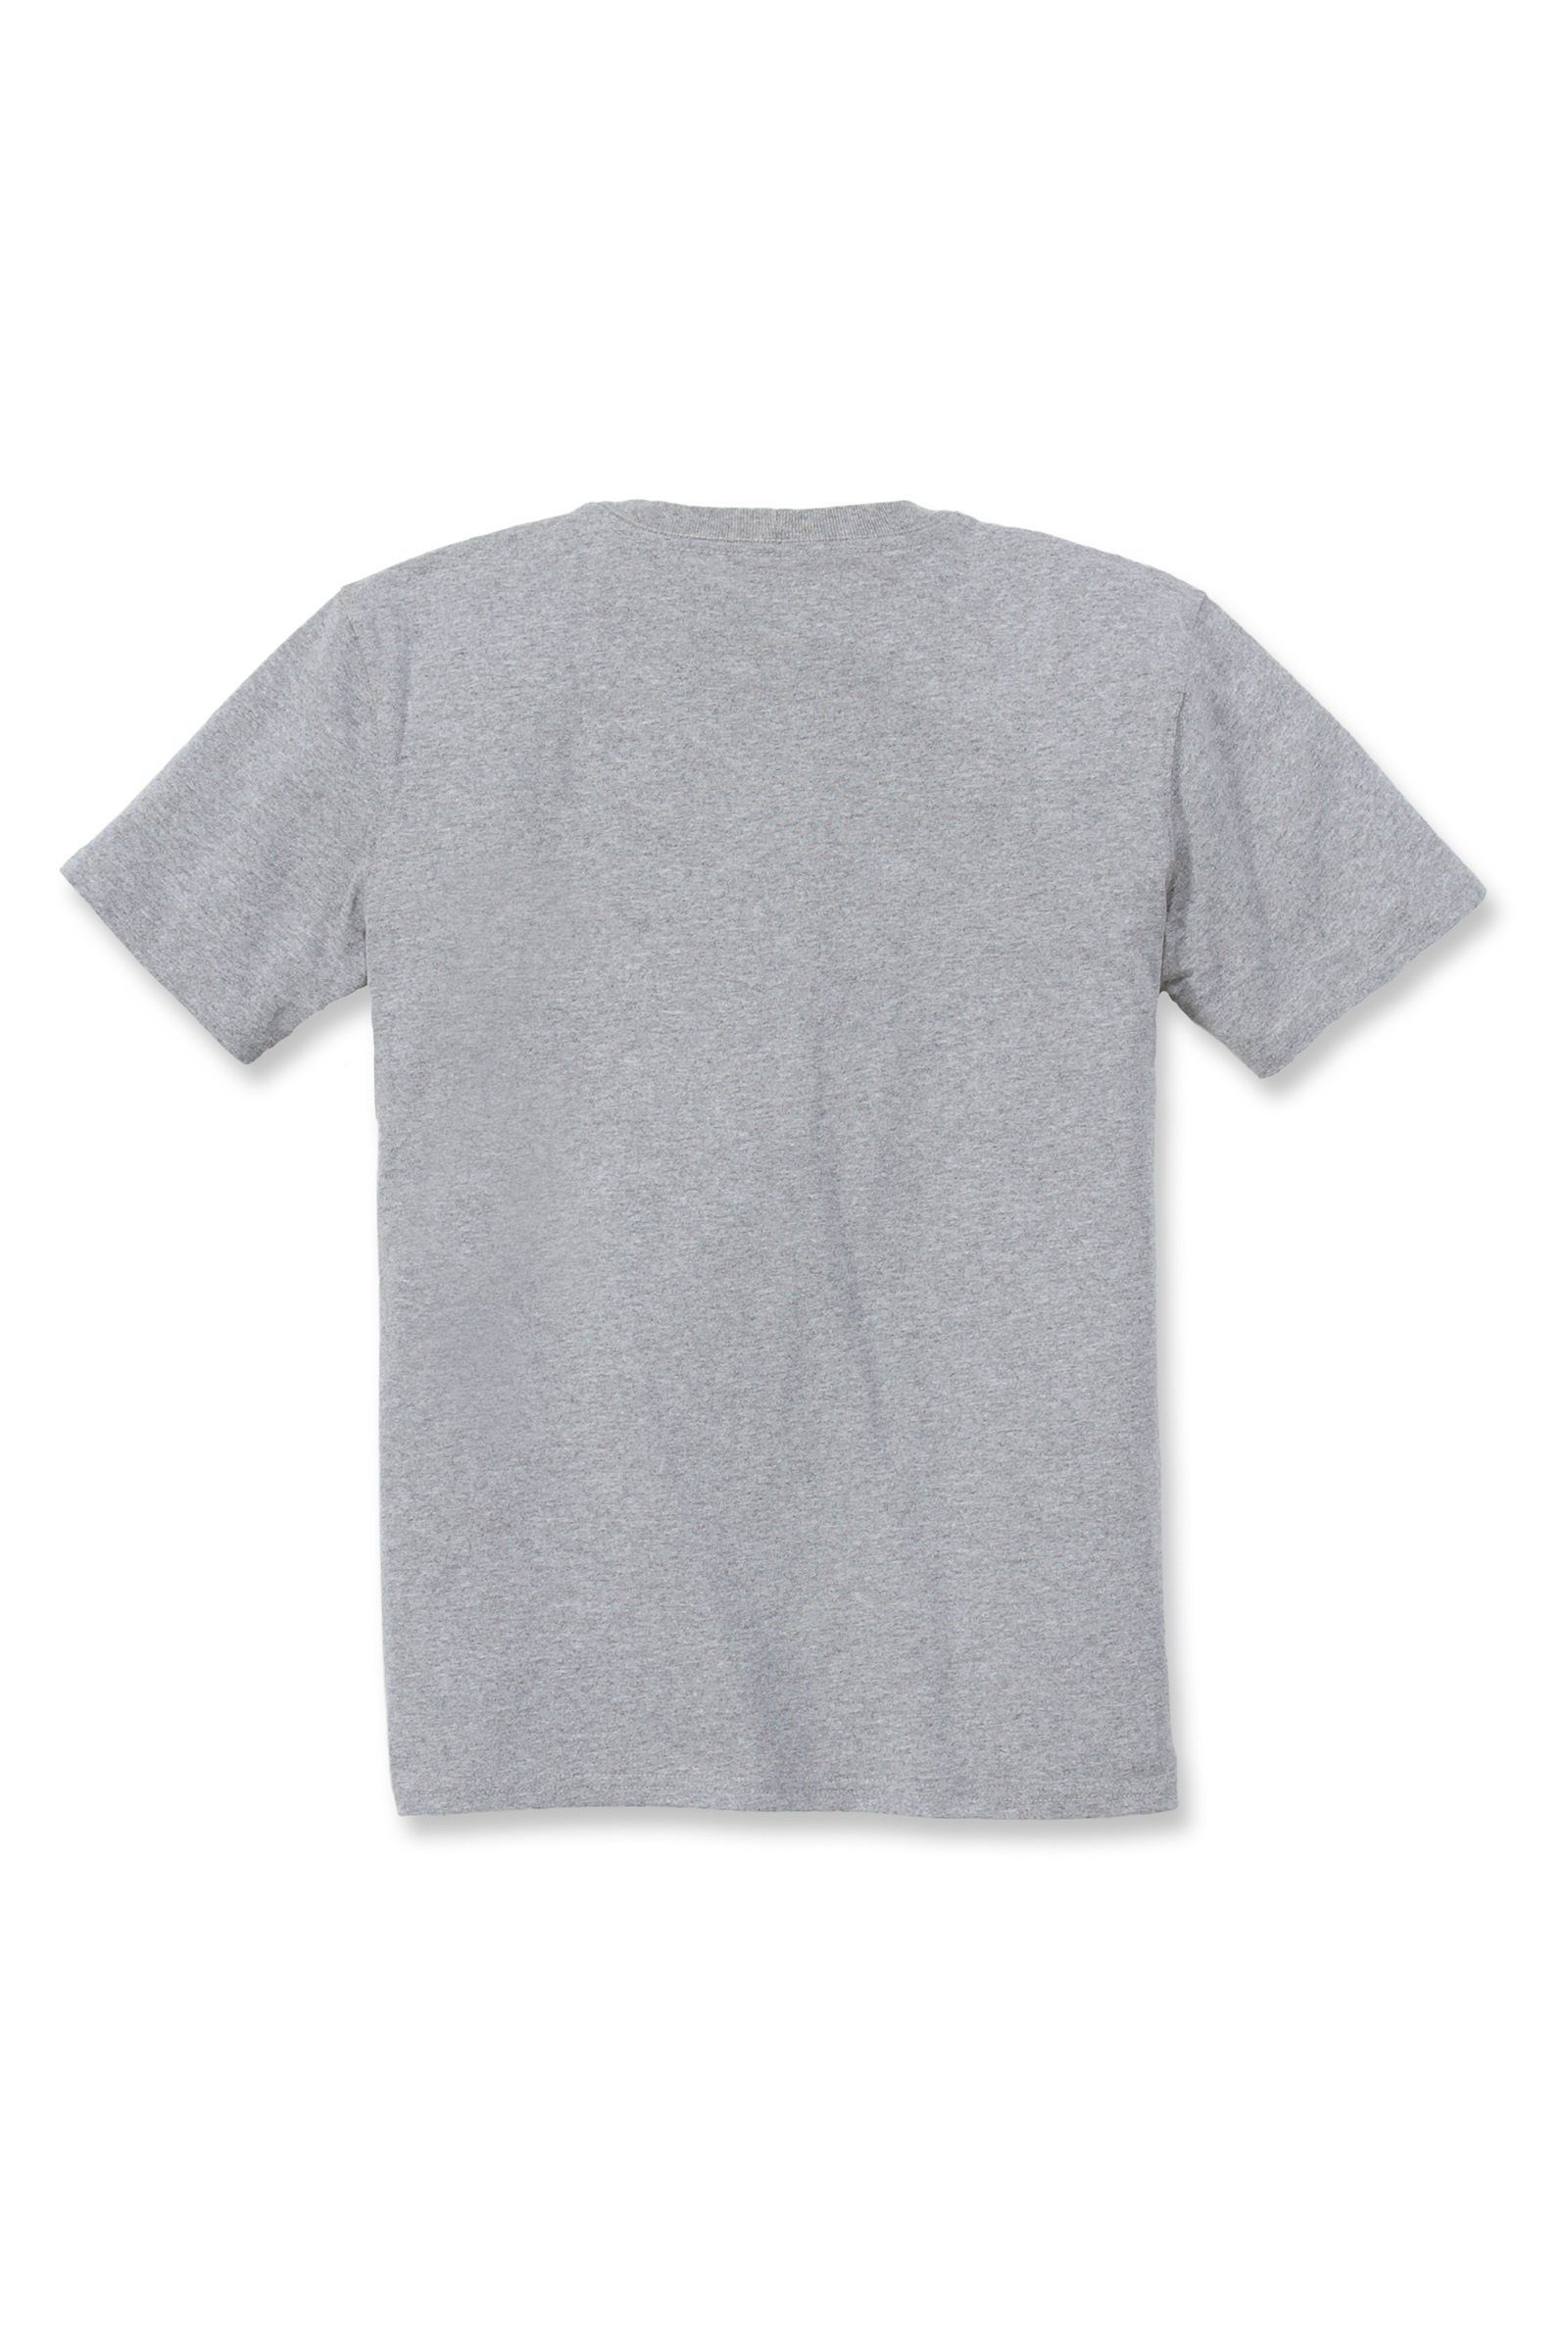 Loose T-Shirt Carhartt Short-Sleeve T-Shirt Heavyweight Fit Carhartt Adult Damen Pocket grey heather